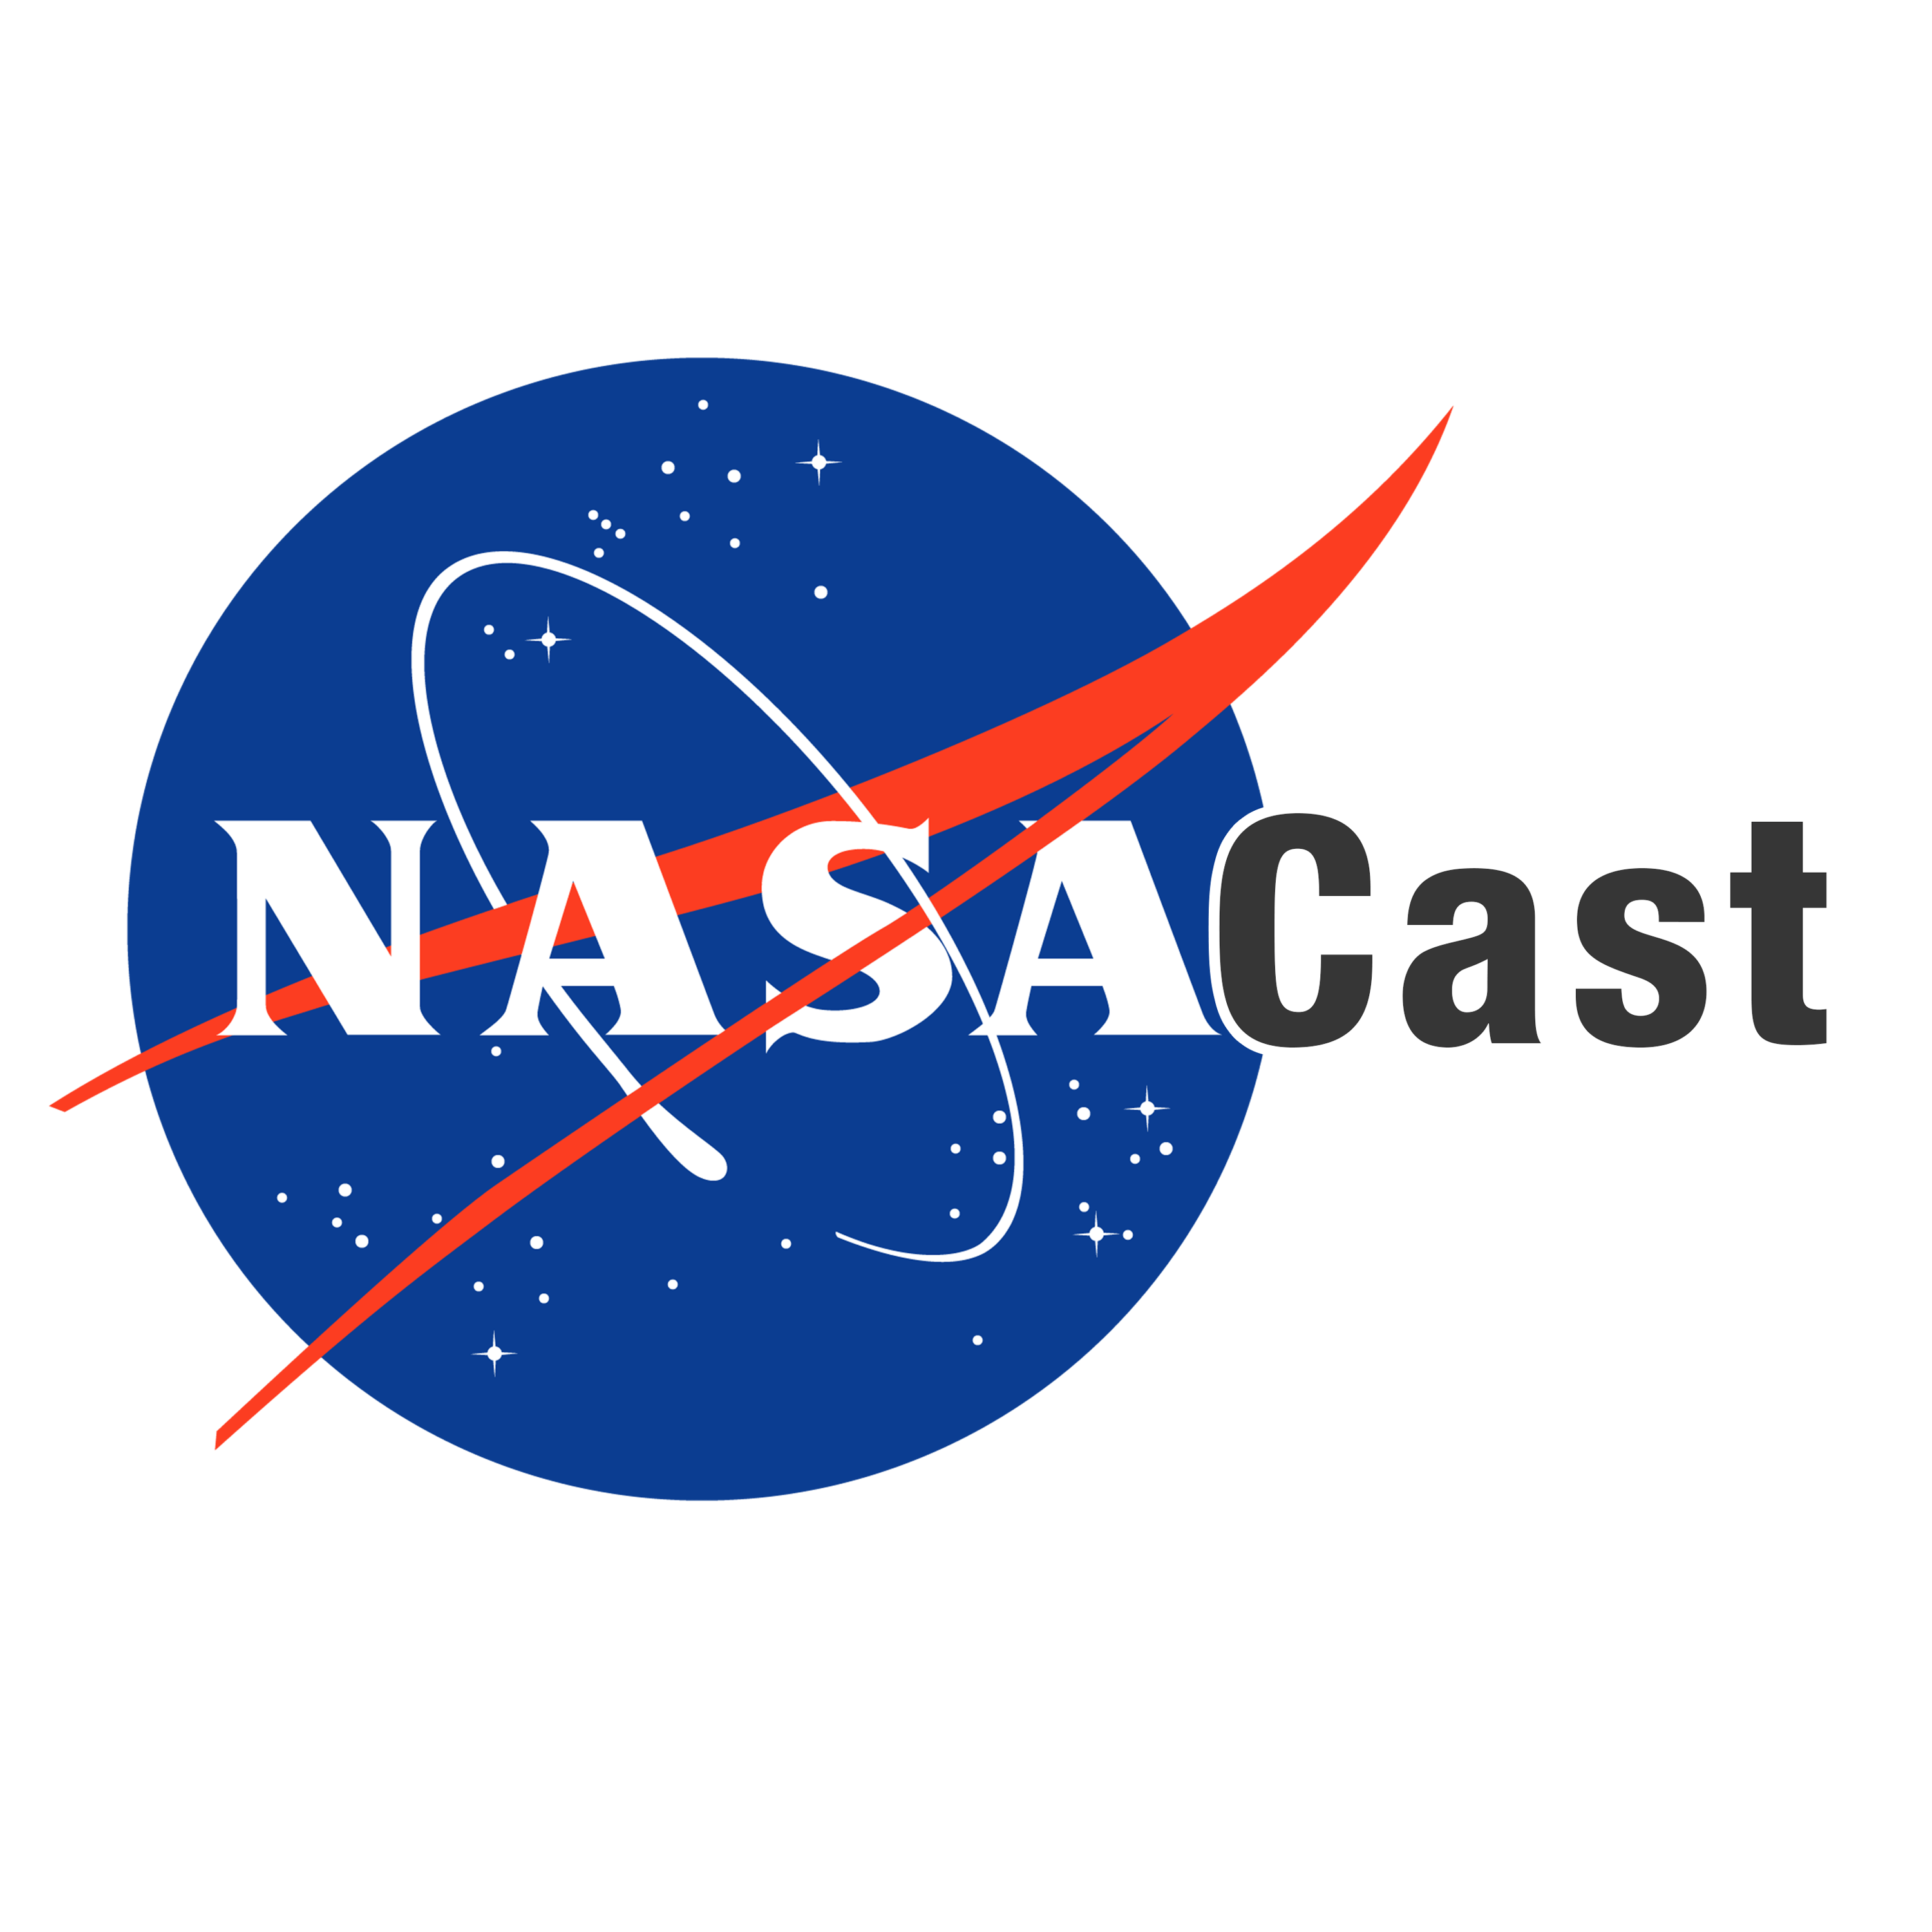 Official NASA Logo - NASA